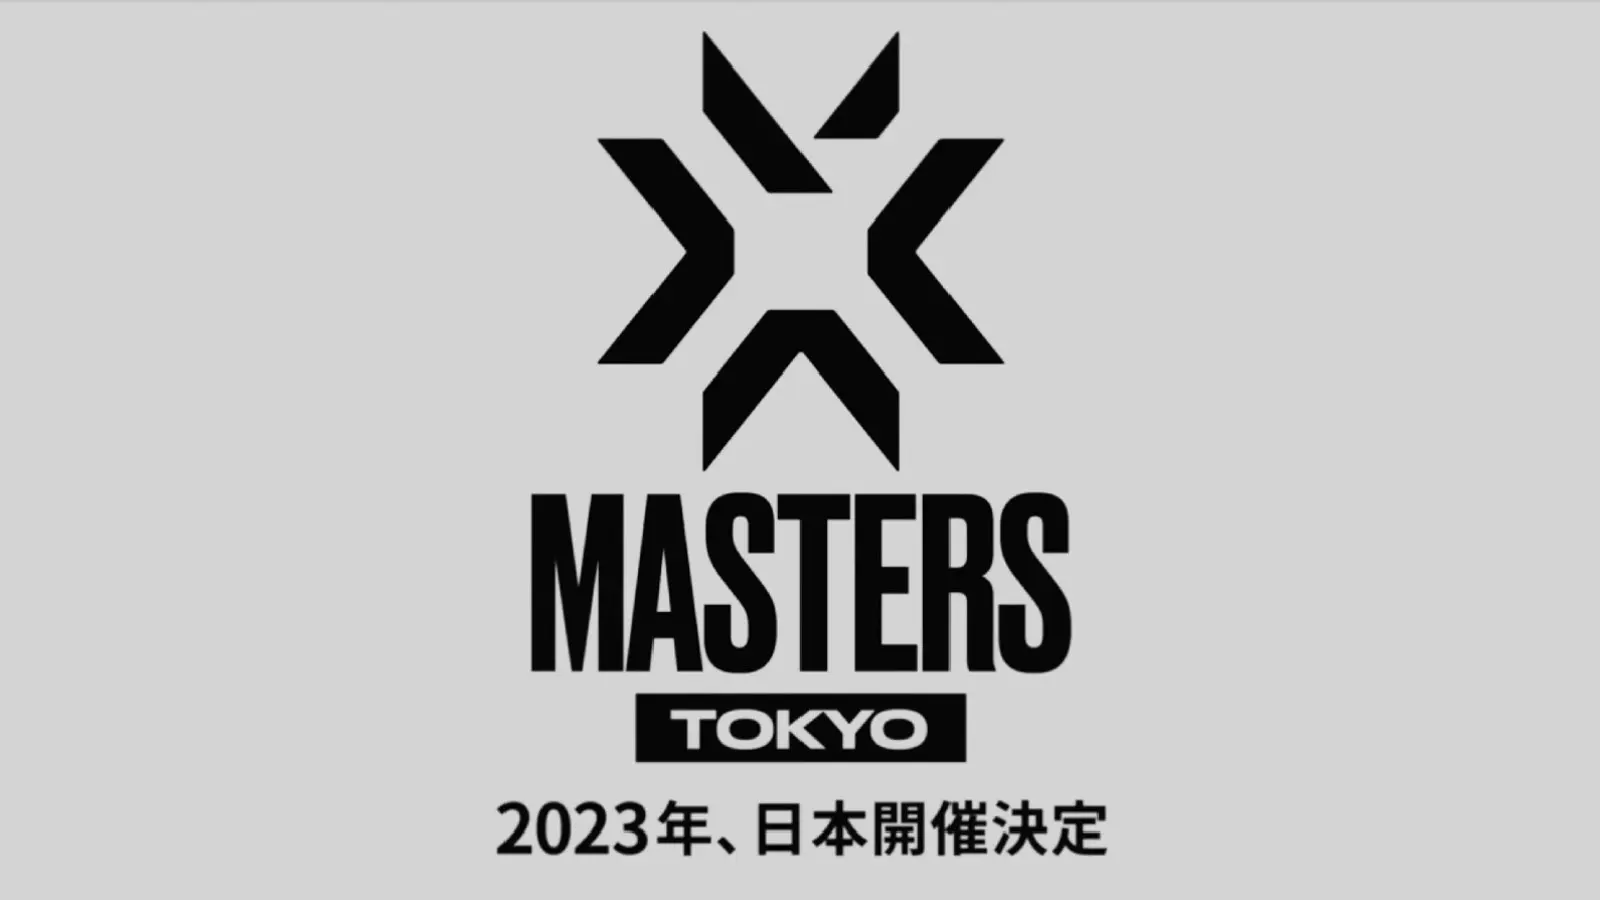 VALORANT Reveals Masters Tokyo Merch - Valorant Tracker